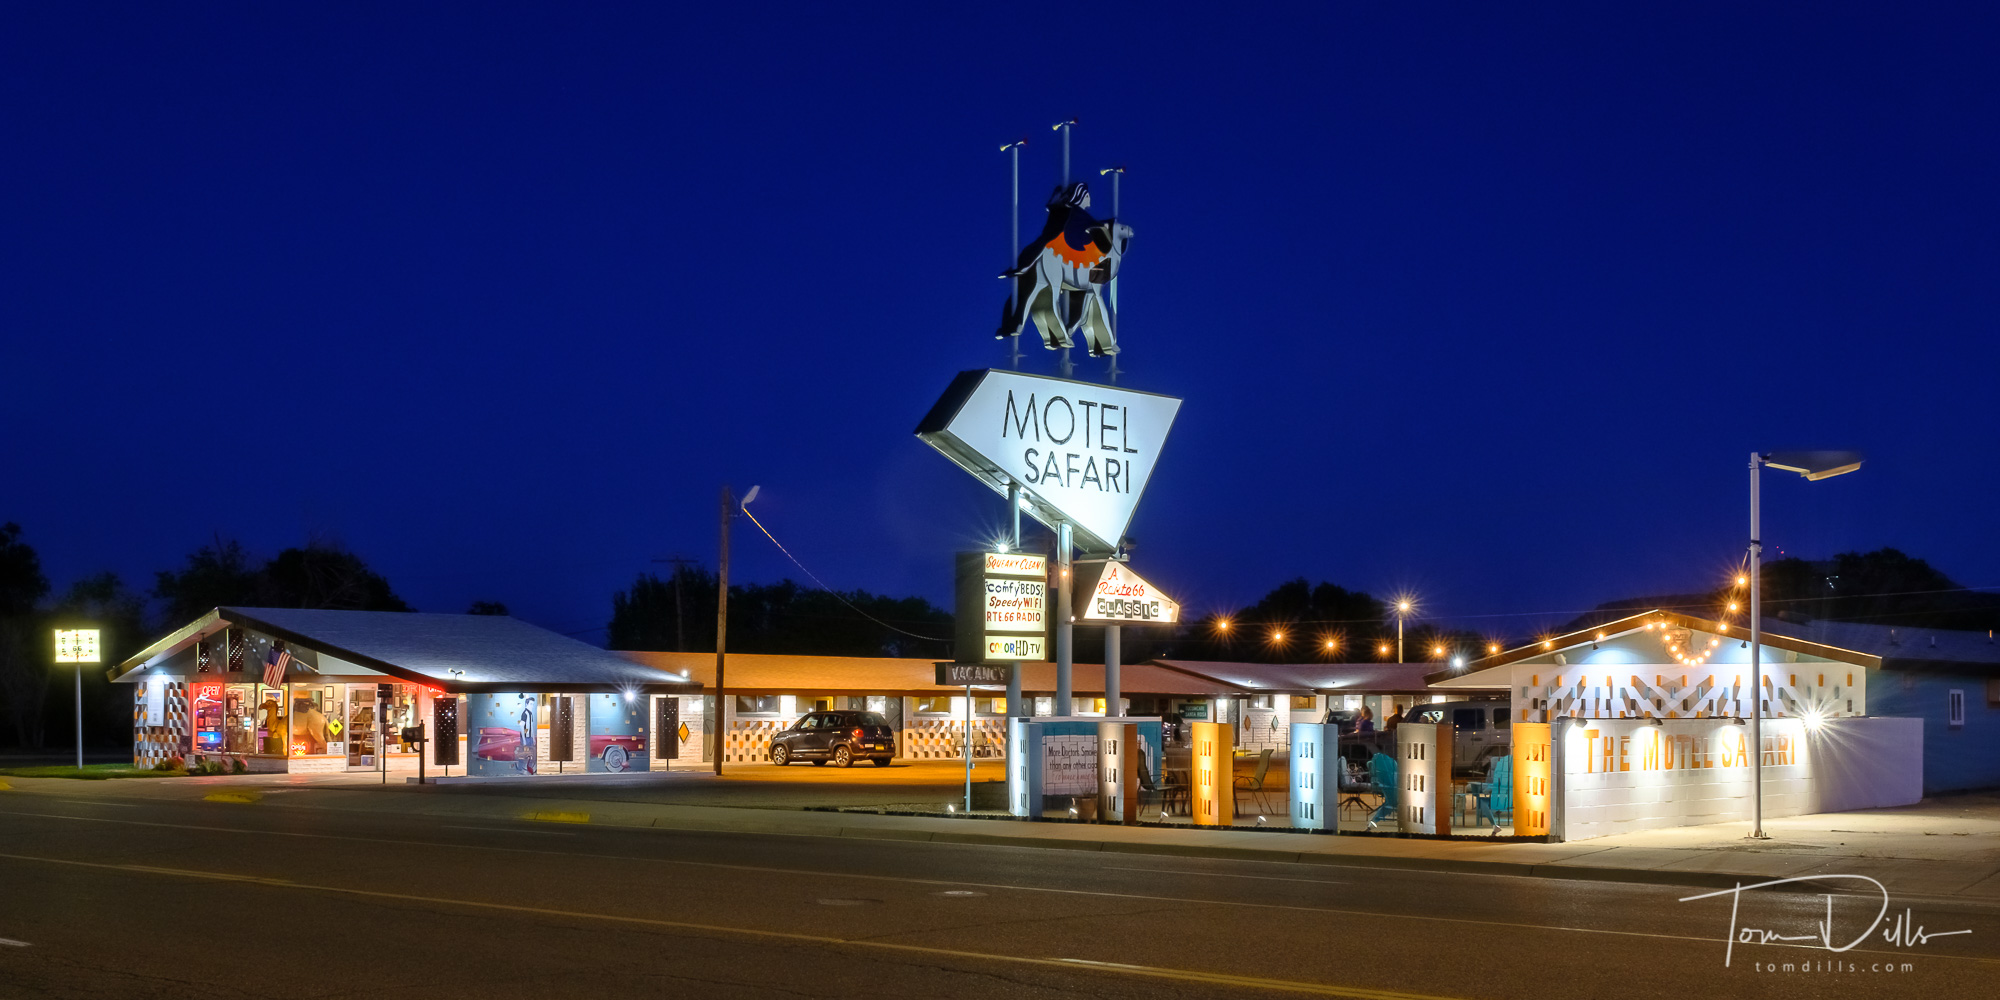 The Motel Safari on Historic Route 66 in Tucumcari, New Mexico